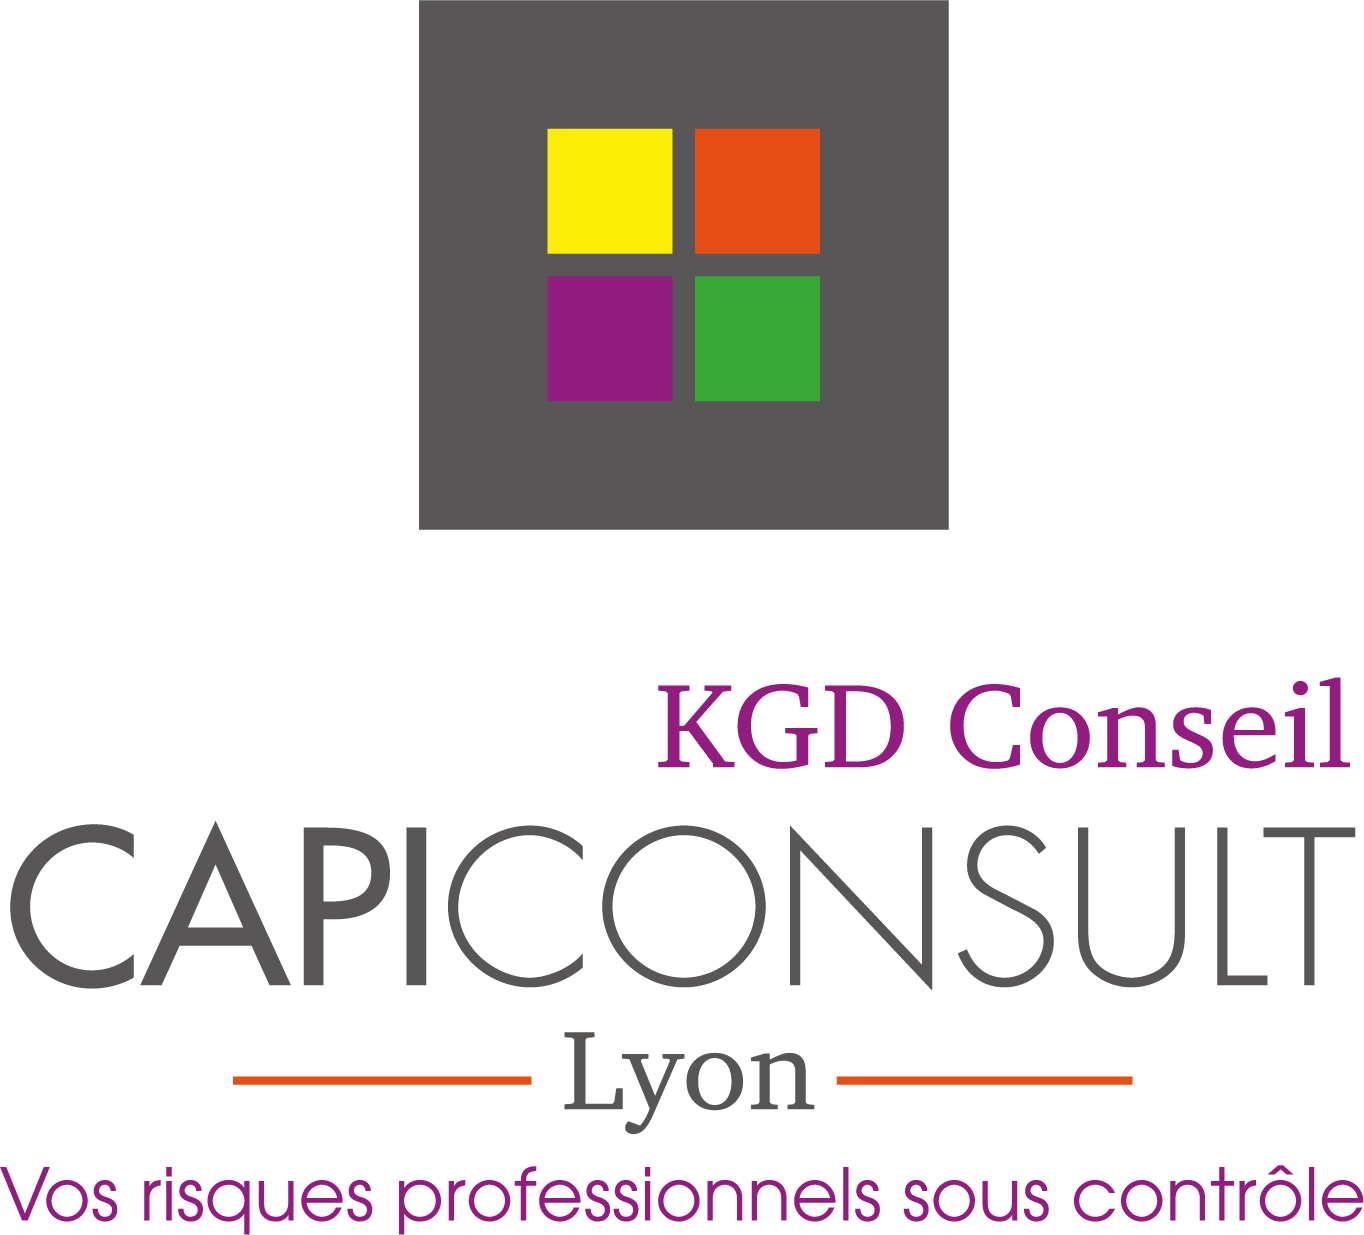 KGD Conseil - CapiConsult Lyon